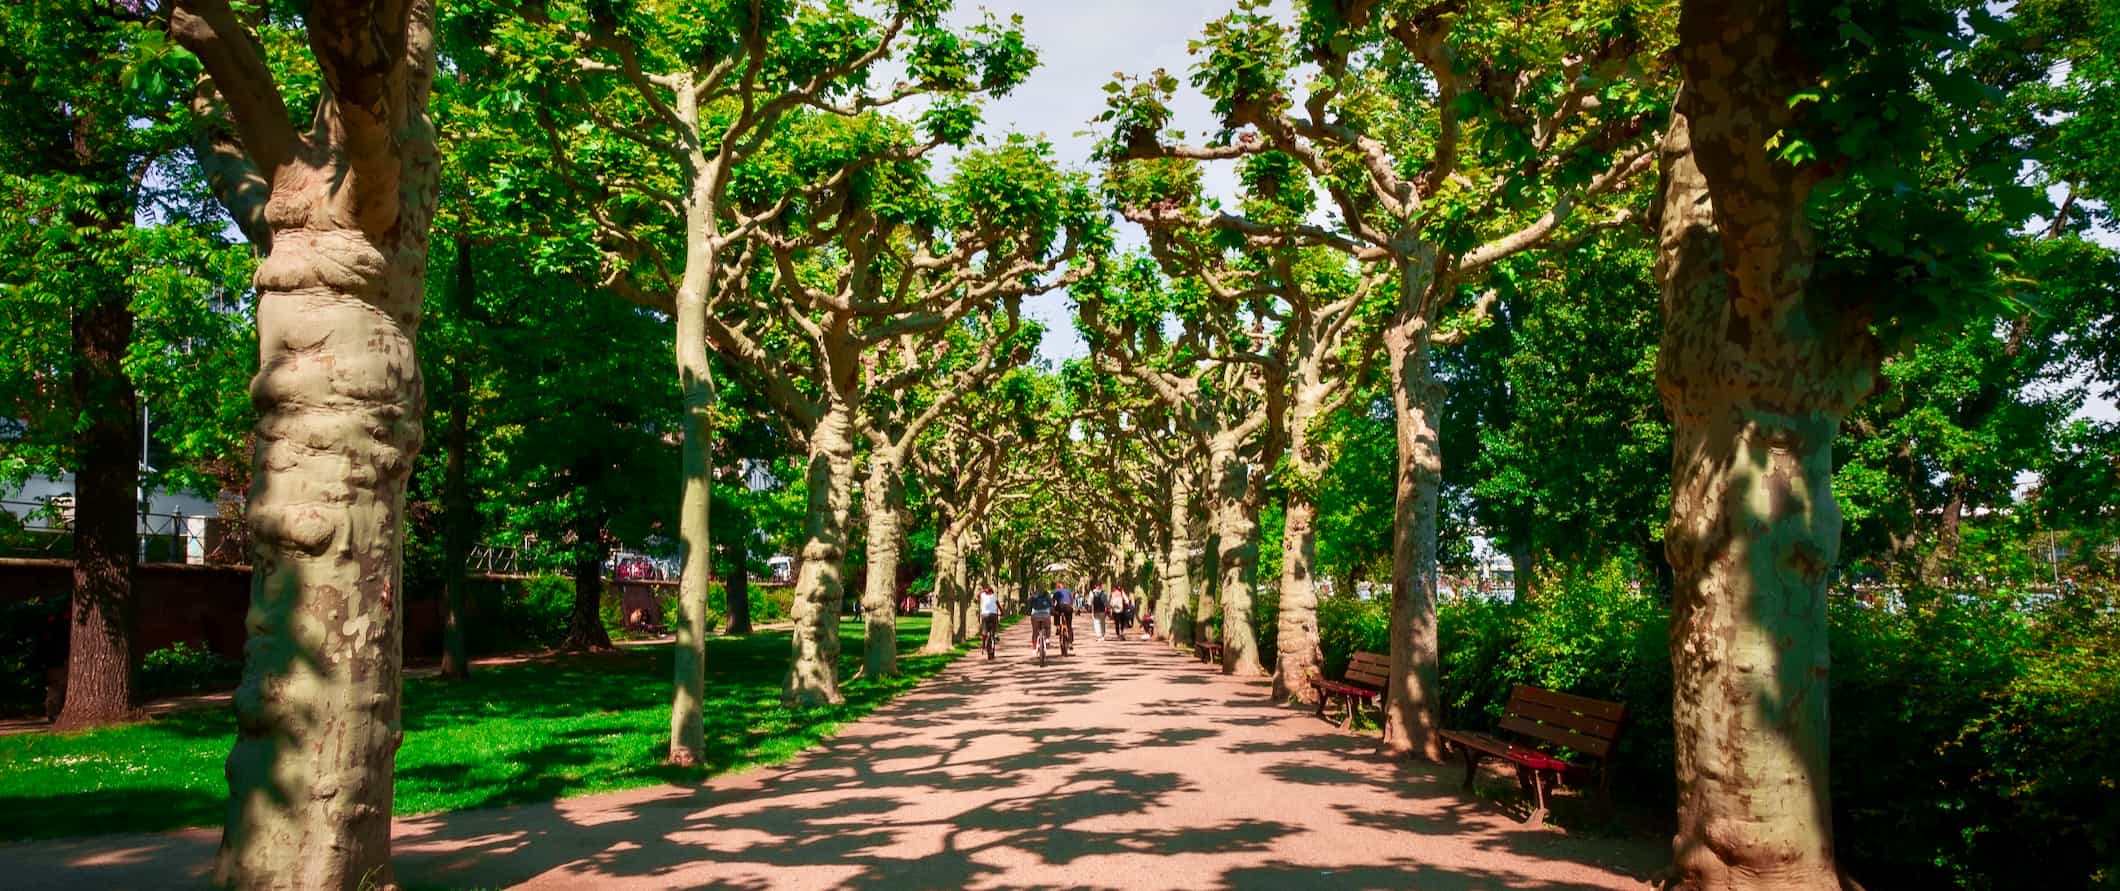 Een met bomen omzoomd wandelpad in een groen park in Frankfurt, Duitsland